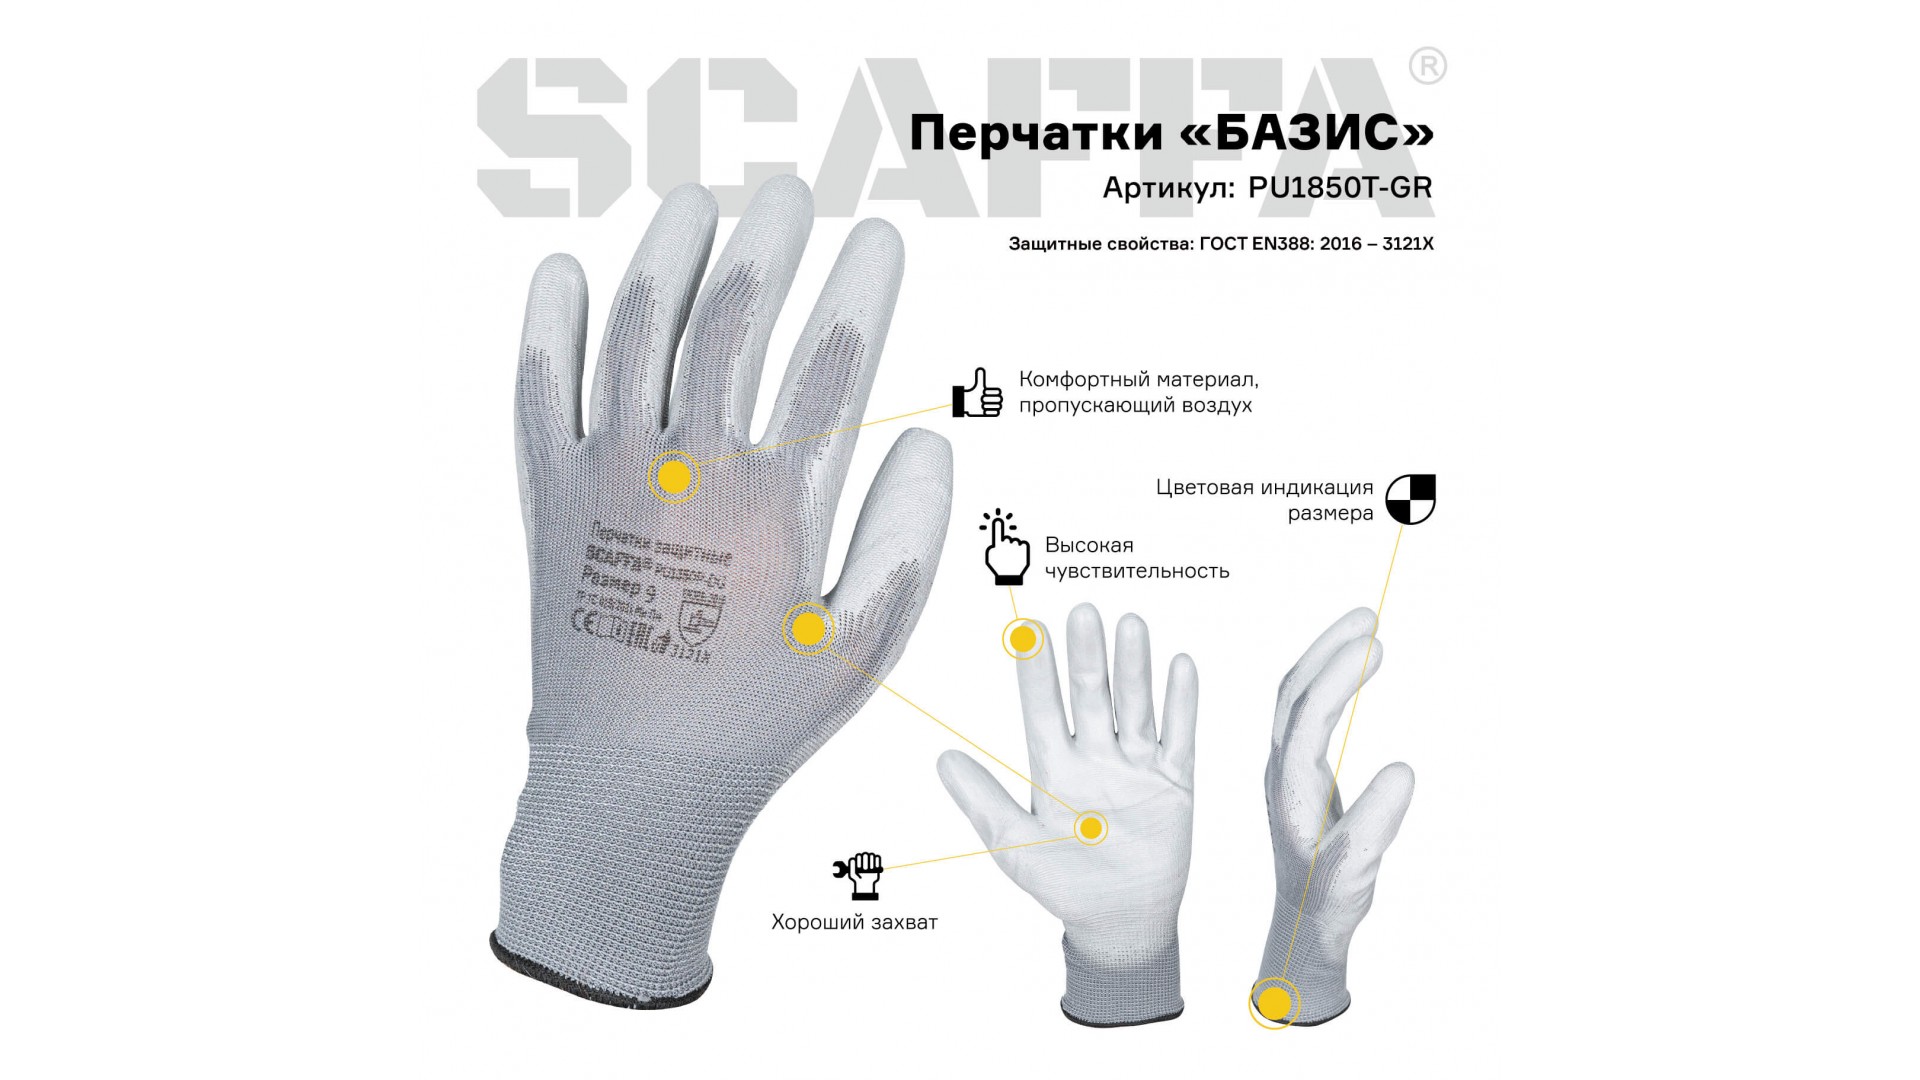 Перчатки БАЗИС для защиты от ОПЗ